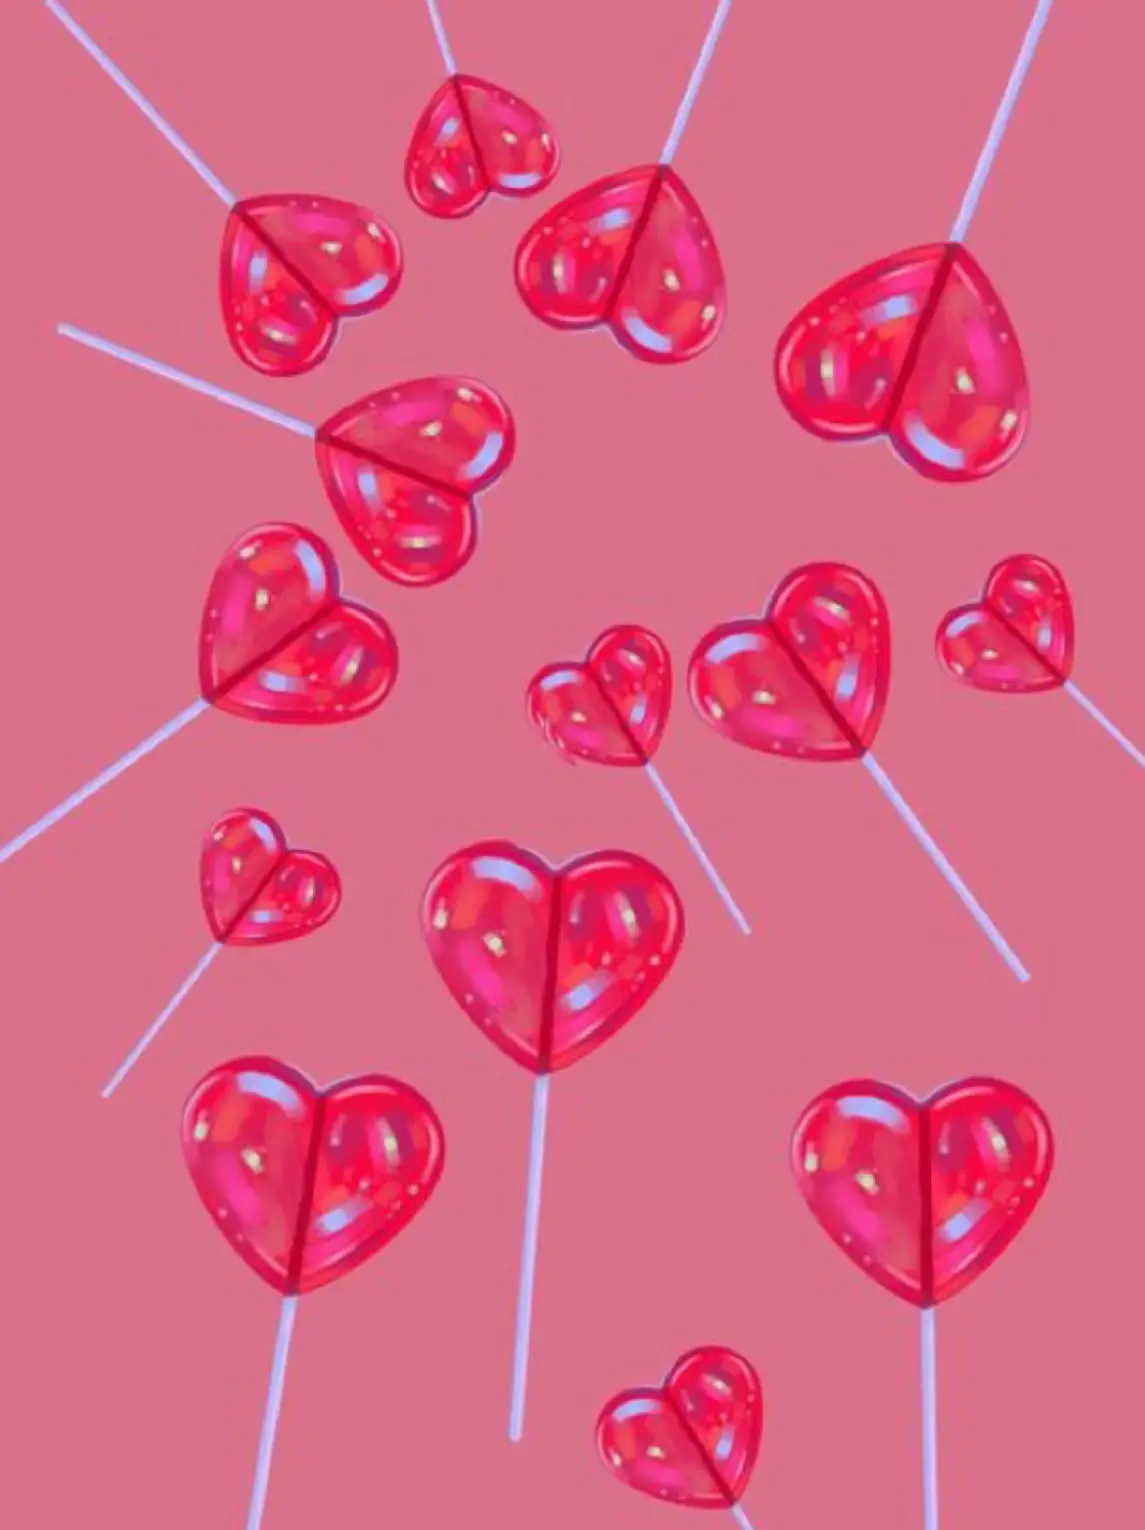 14 Heartstopper Wallpaper Ideas : Two Red Hearts 1 - Fab Mood